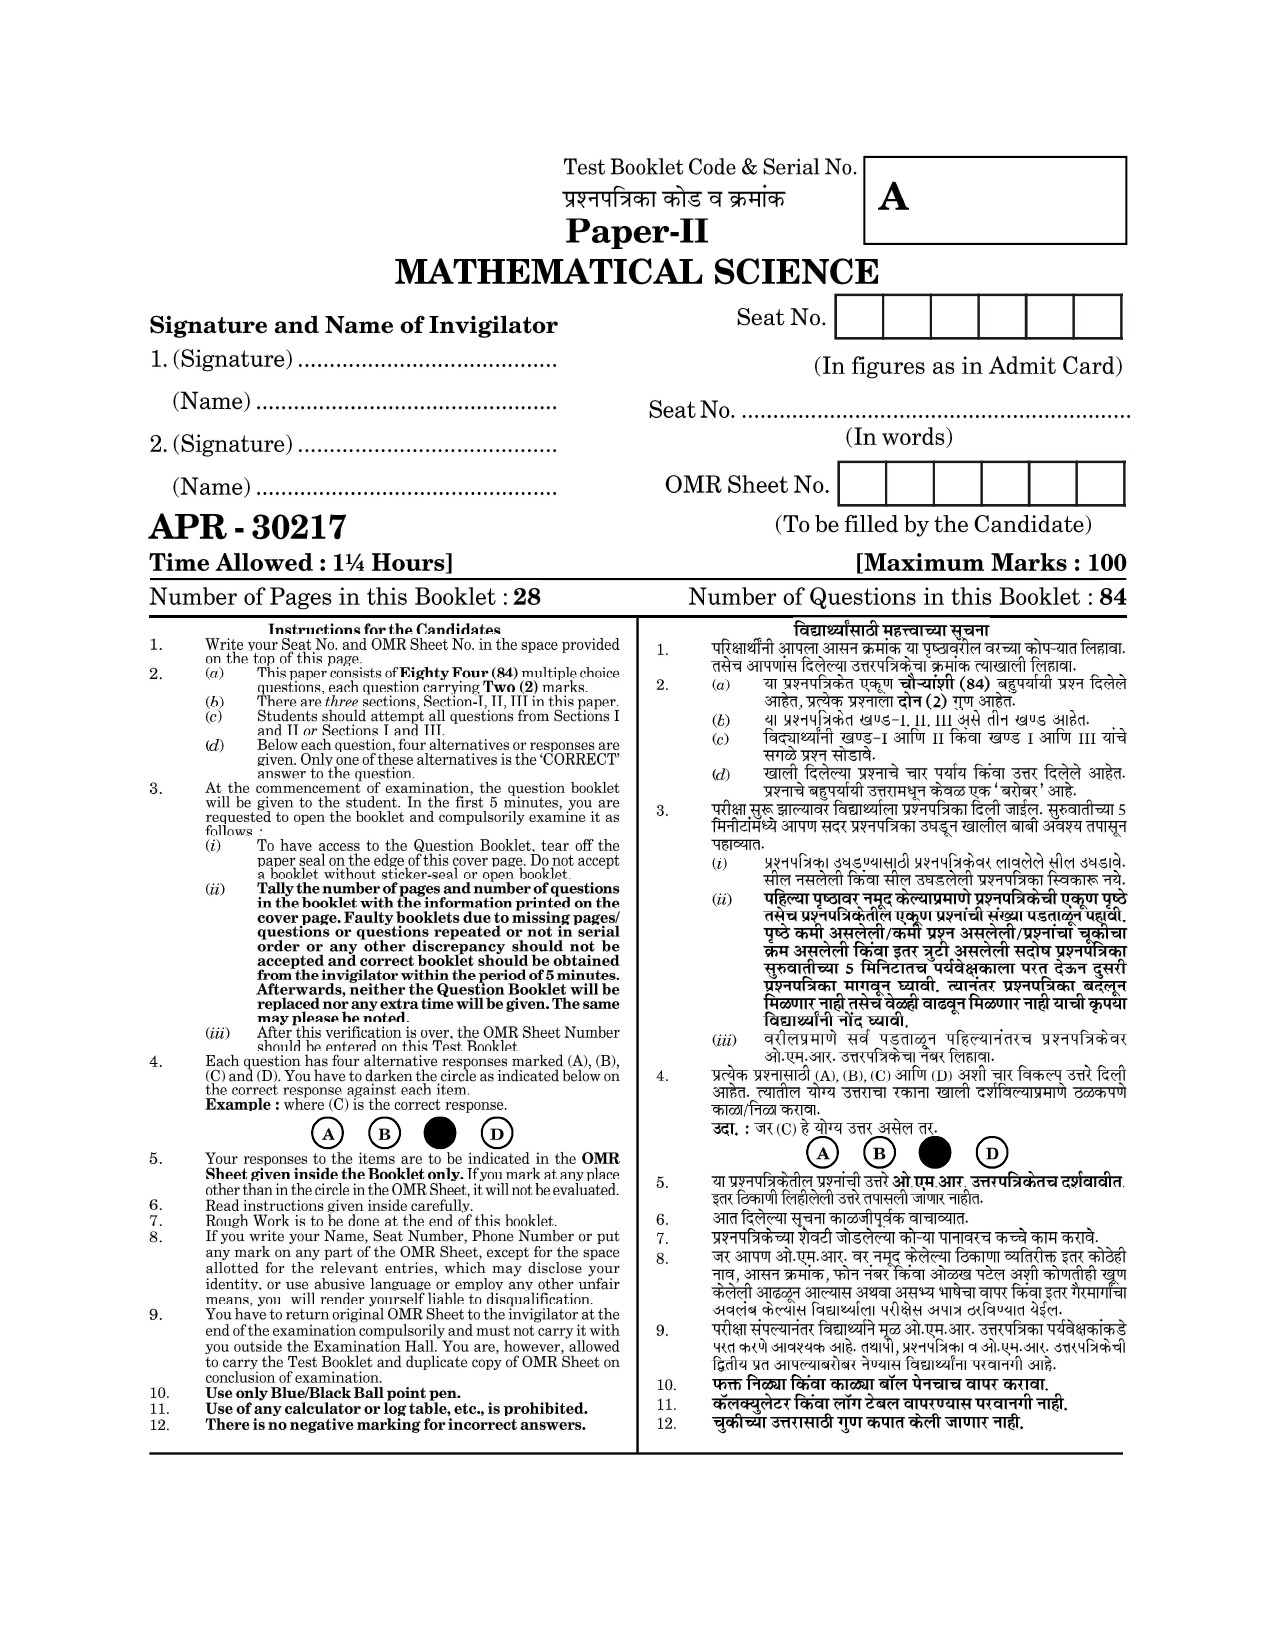 Maharashtra SET Mathematical Sciences Question Paper II April 2017 1